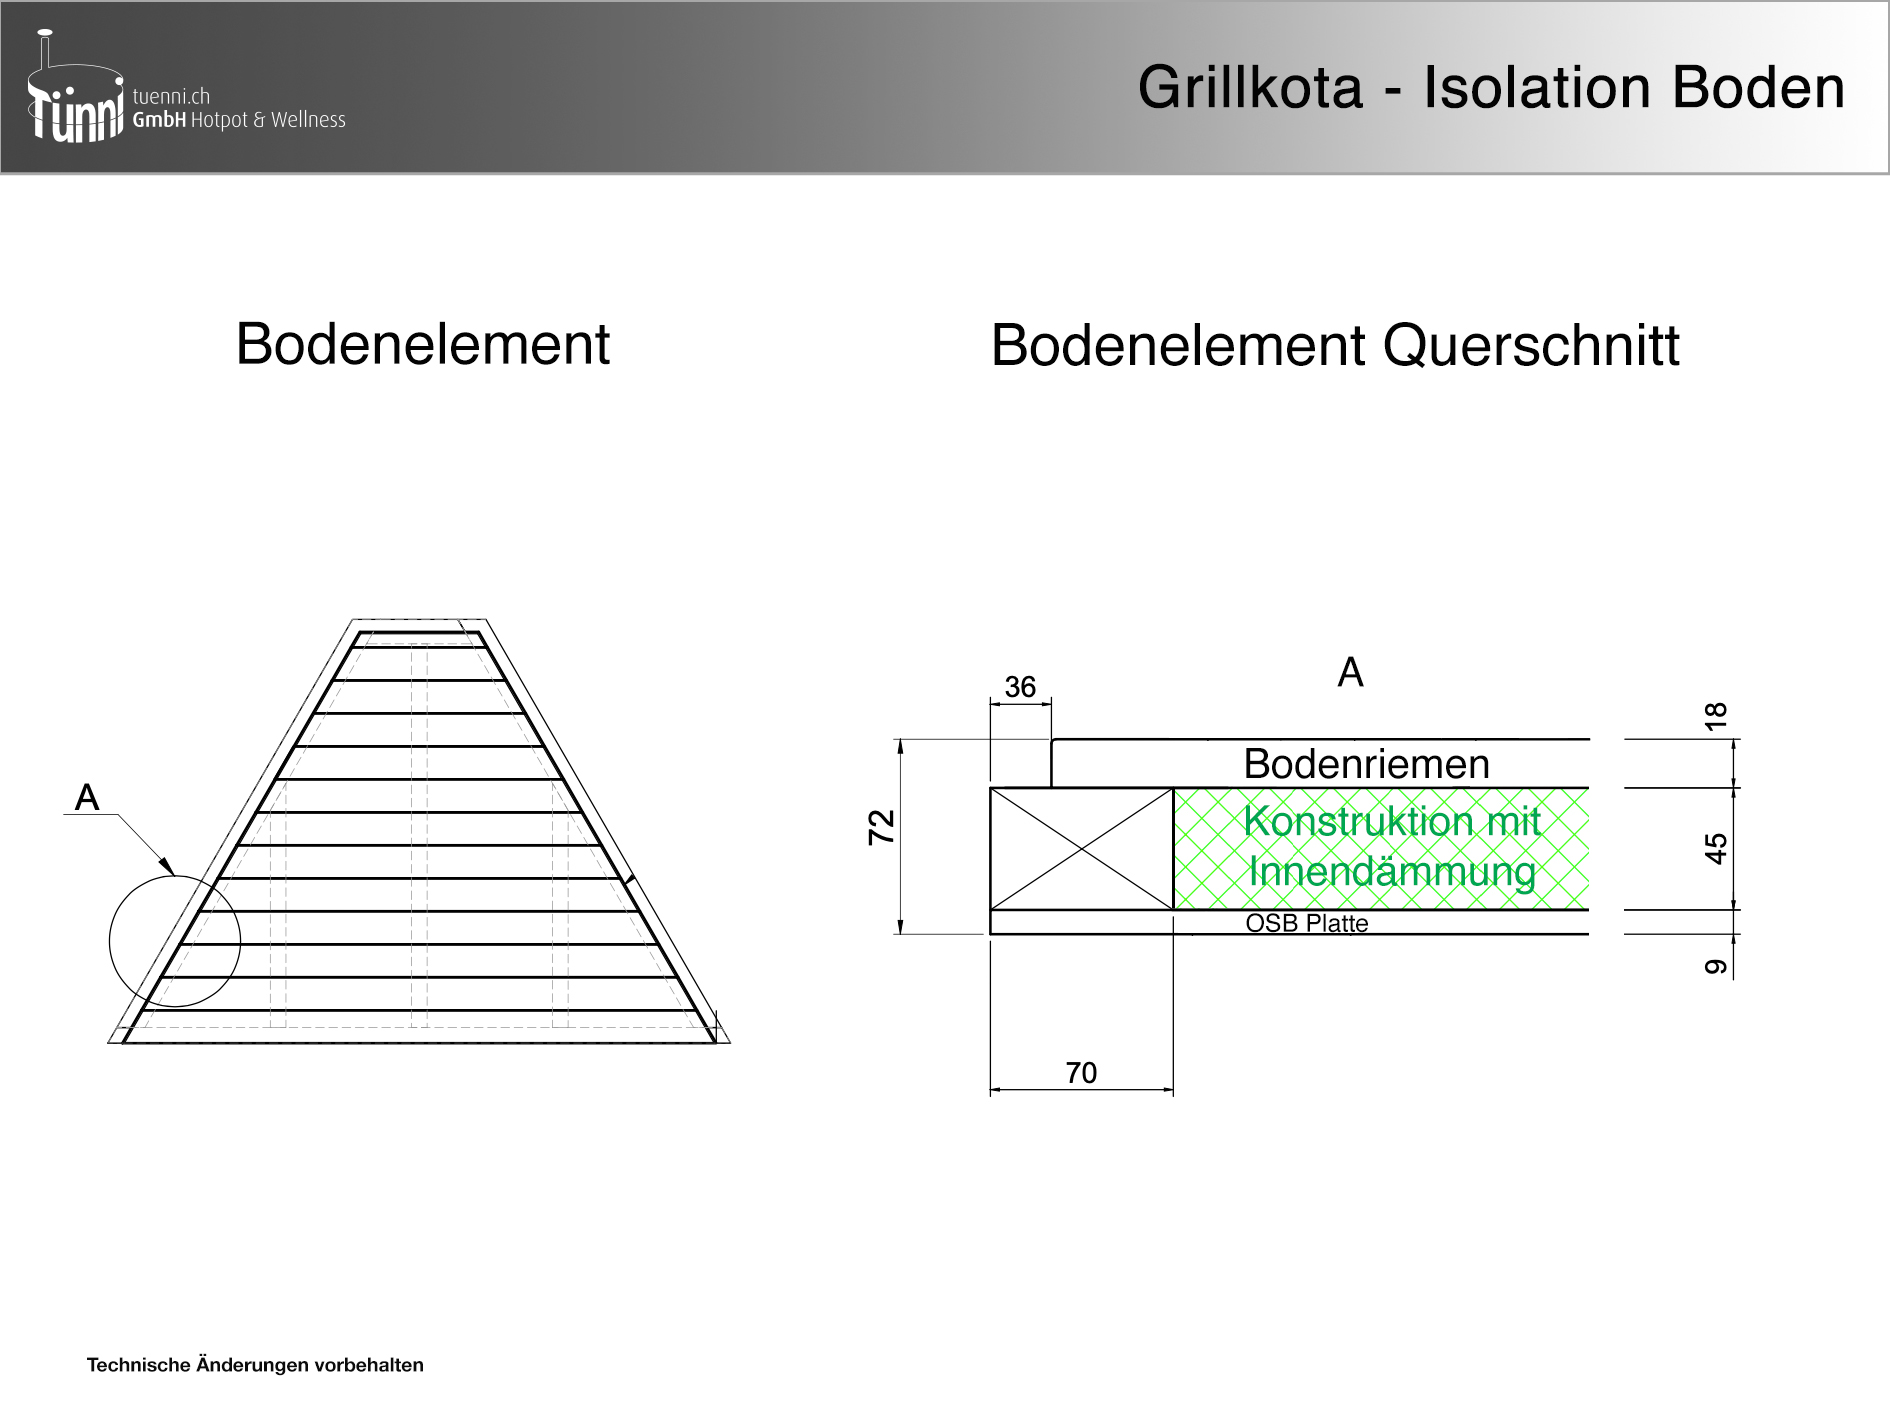 Grillkota_Isolation Boden